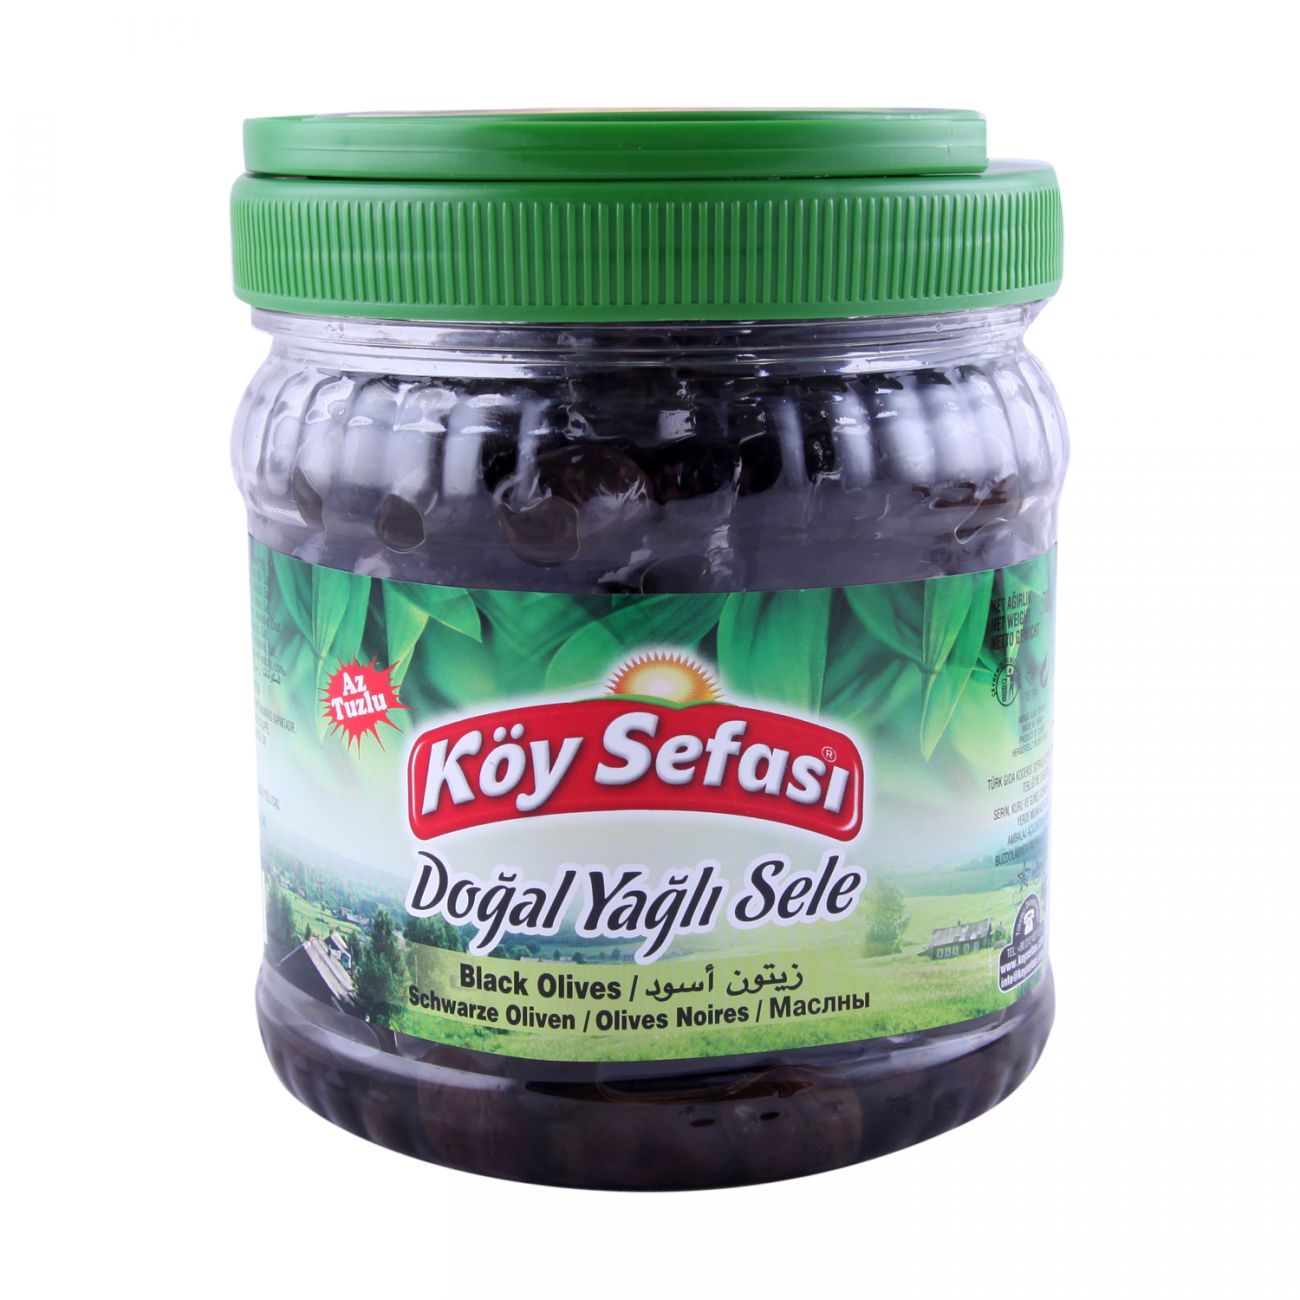 Koy Sefasi Sele Black Olive (700G) - Aytac Foods